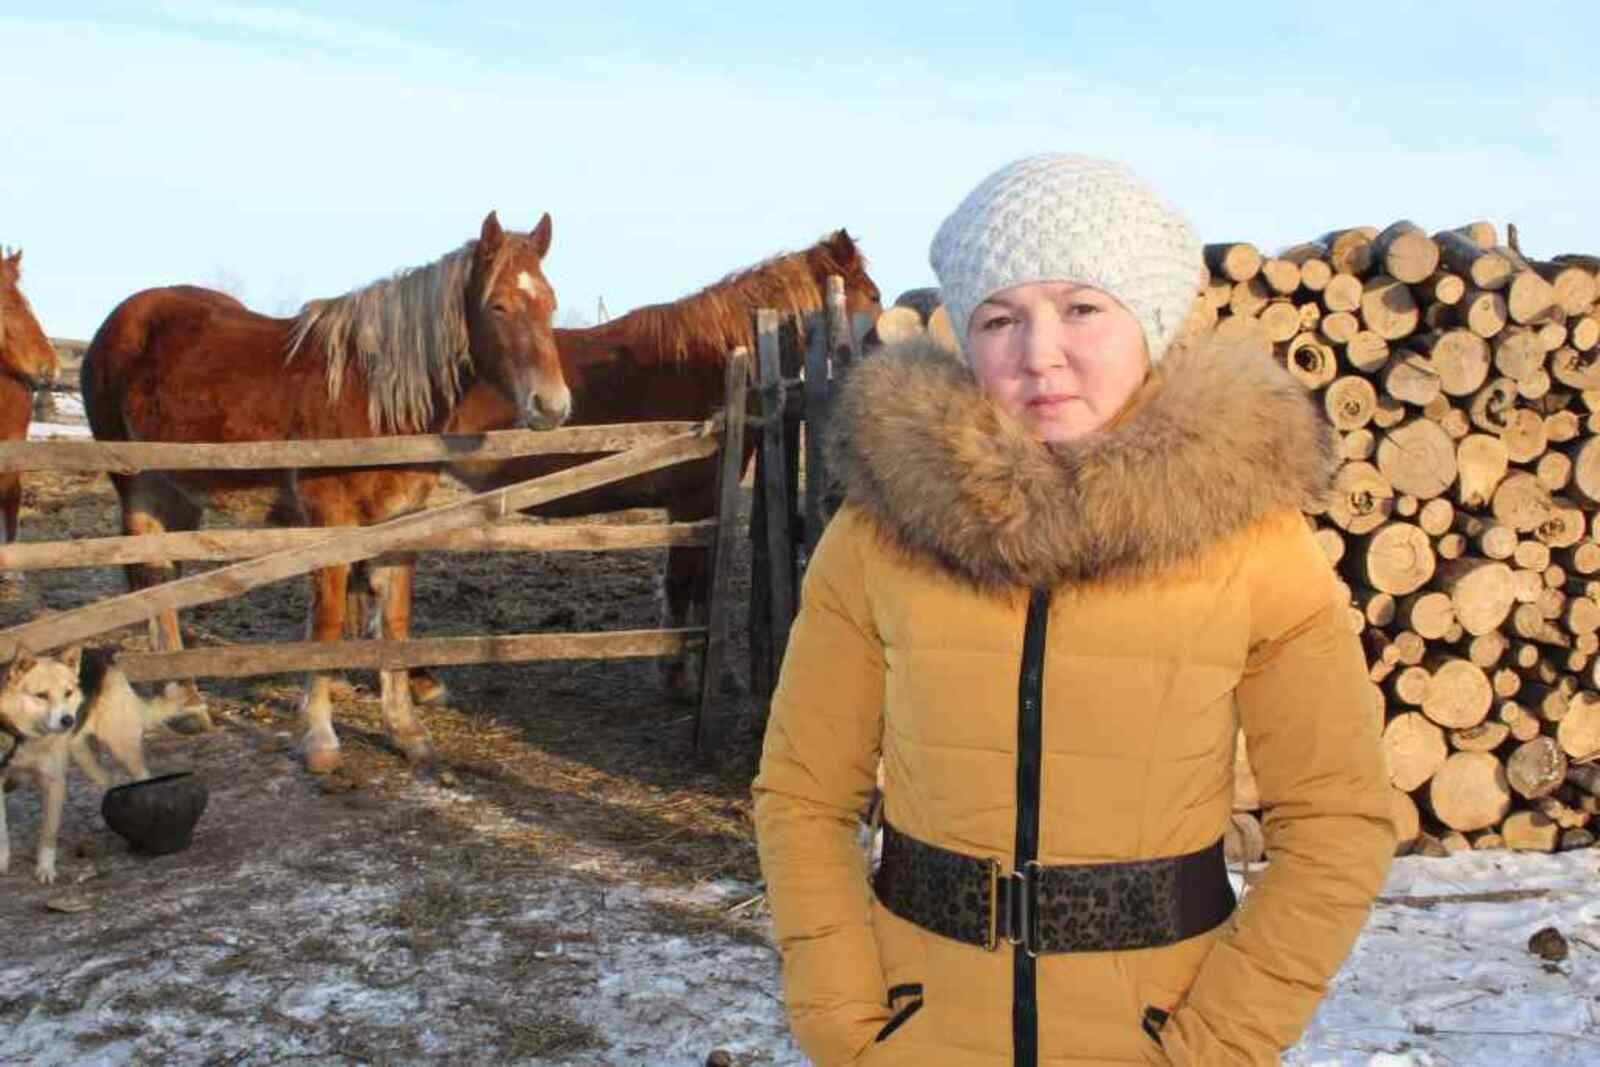 Уроженка Белоруссии Виктория Гильманова влилась в коллектив фермы лишь 4 года назад. До того ничего не смыслящая в доении коров, за этот период она не только освоила азы совершенно нового для неё дела, но и выбилась в передовые доярки.